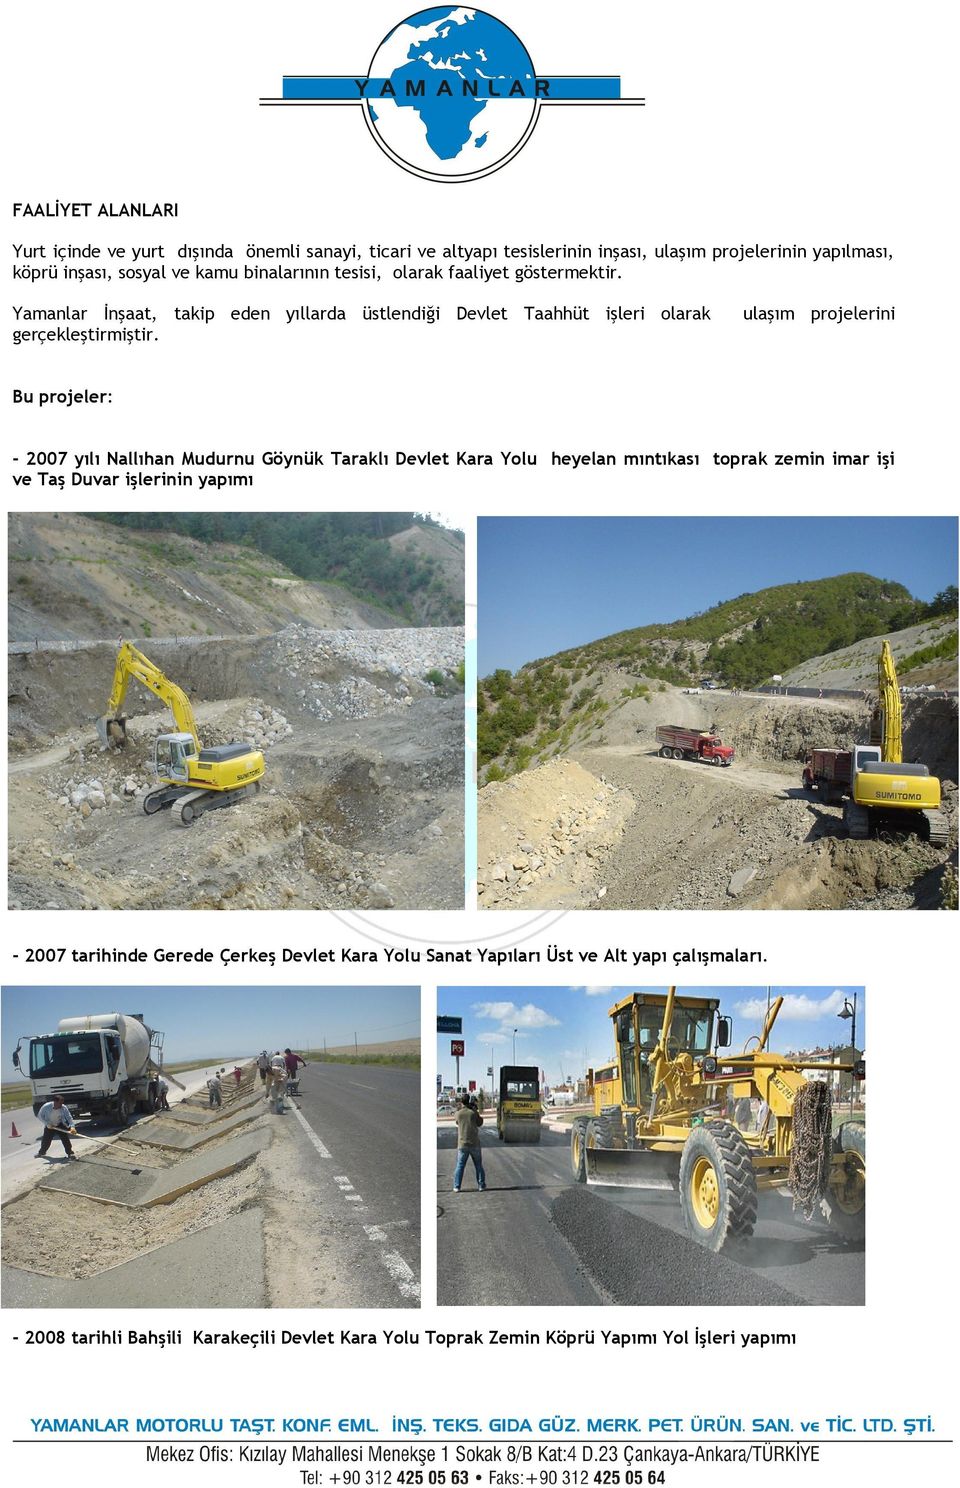 ulaşım projelerini Bu projeler: - 2007 yılı Nallıhan Mudurnu Göynük Taraklı Devlet Kara Yolu heyelan mıntıkası toprak zemin imar işi ve Taş Duvar işlerinin yapımı